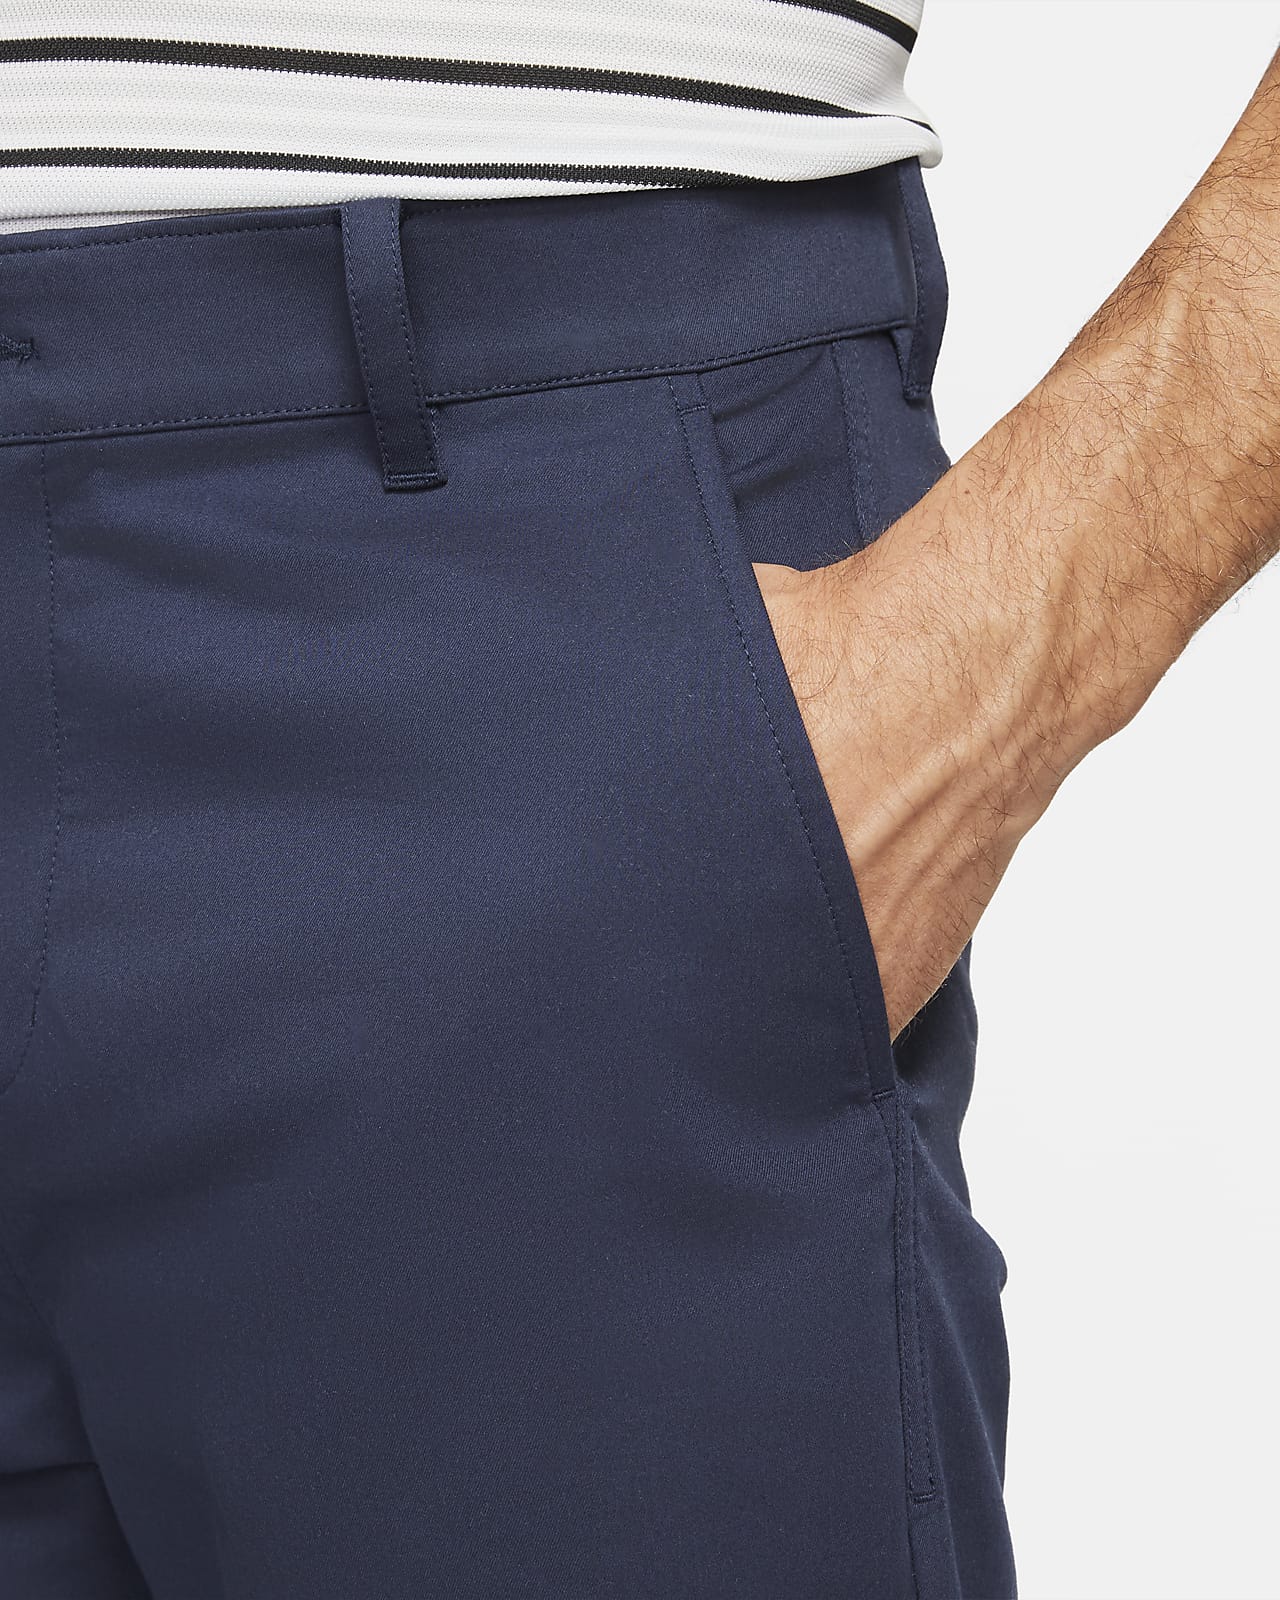 Pantalones chinos de golf de ajuste slim para hombre Nike Dri-FIT UV